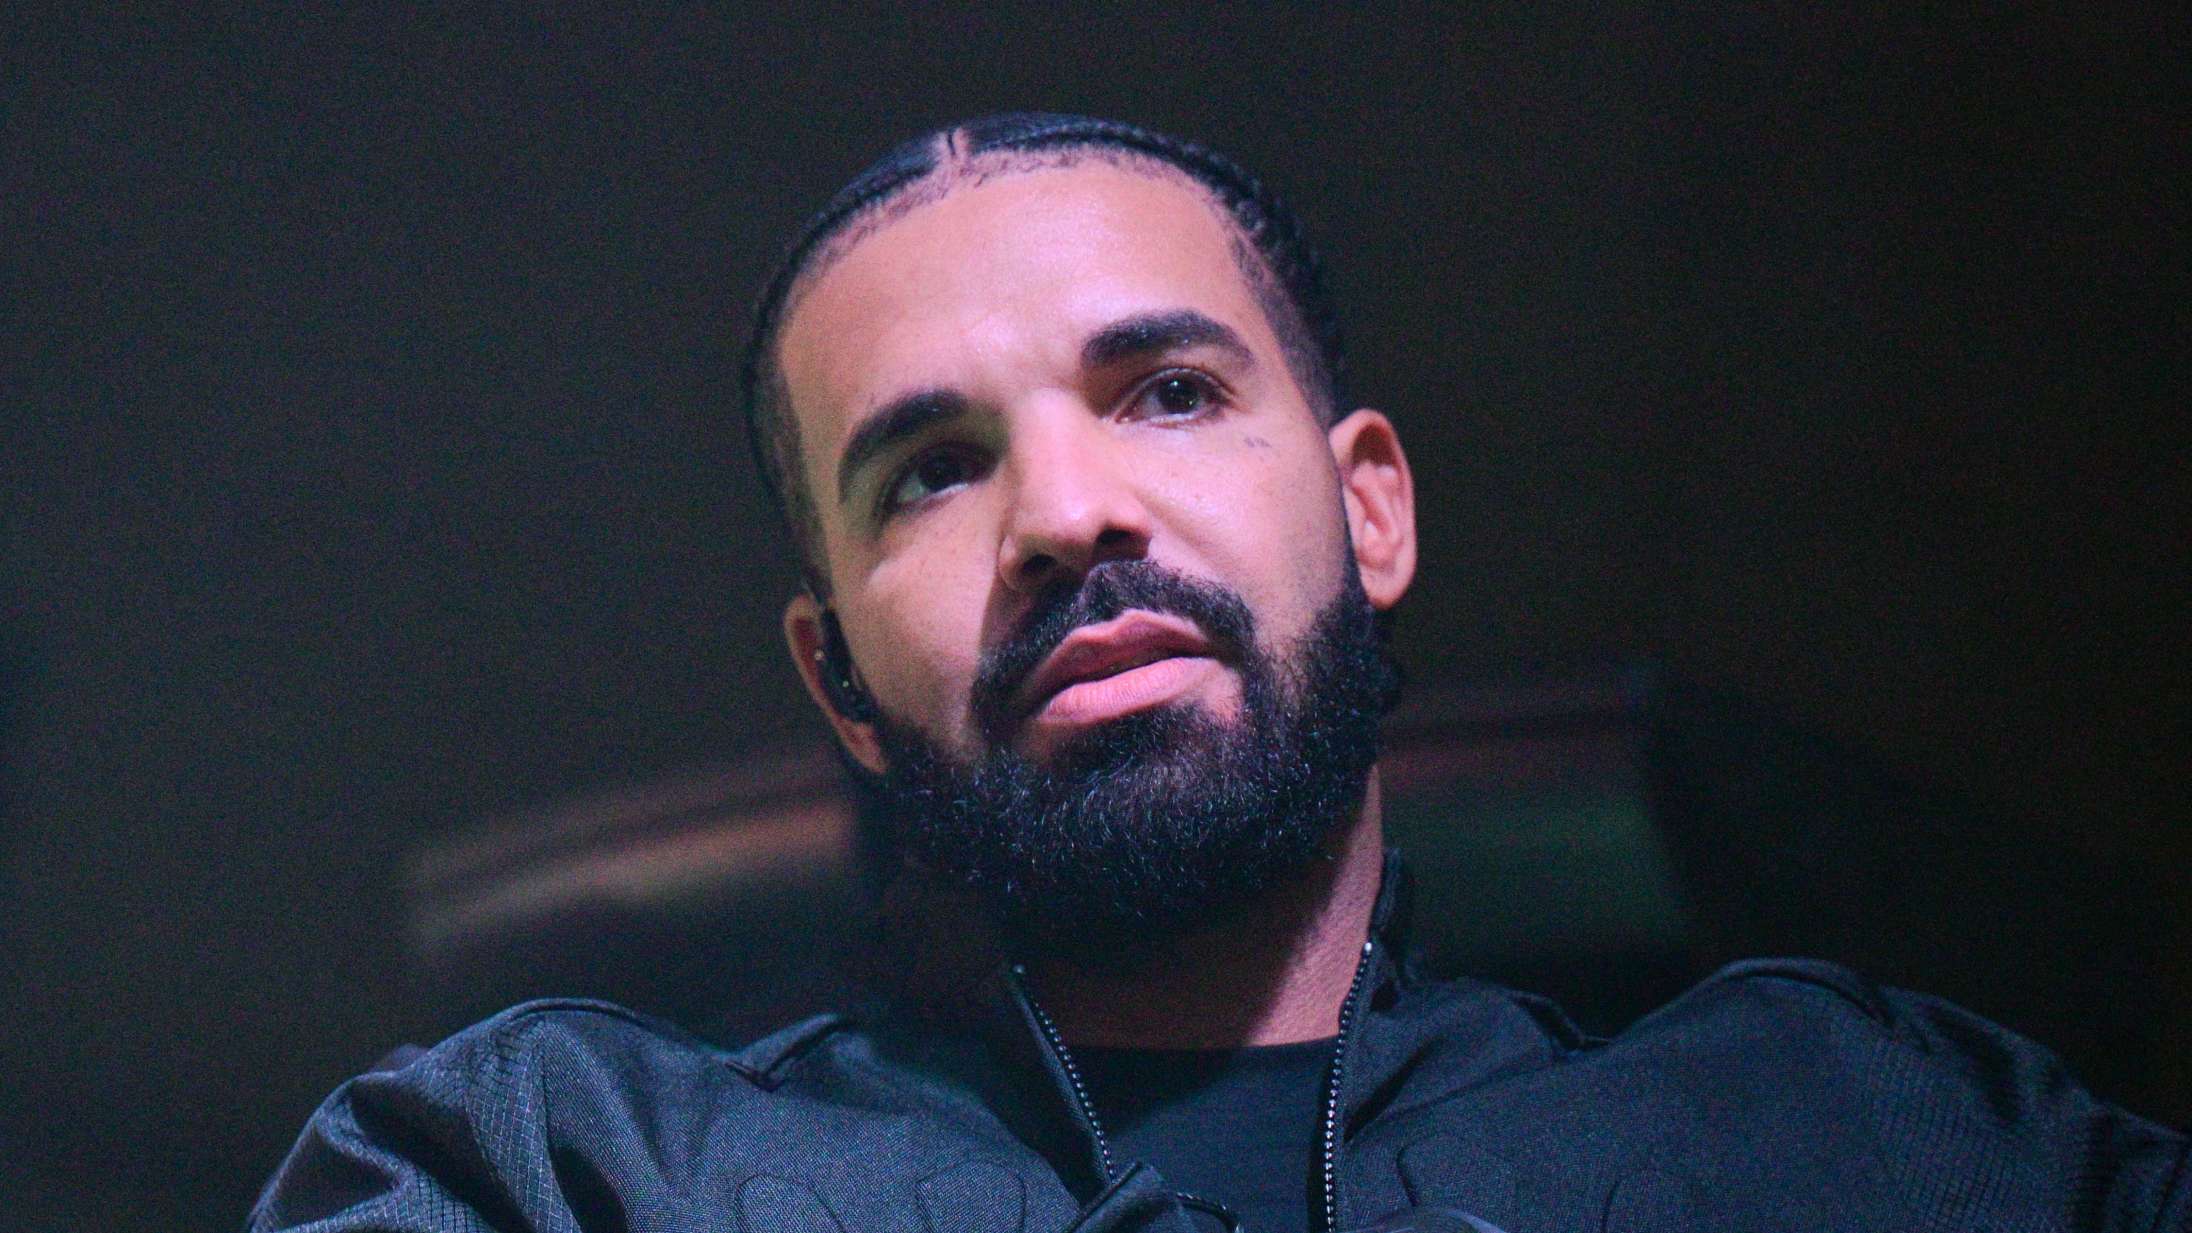 ‘For All the Dogs’ er Drakes dårligst anmeldte album nogensinde